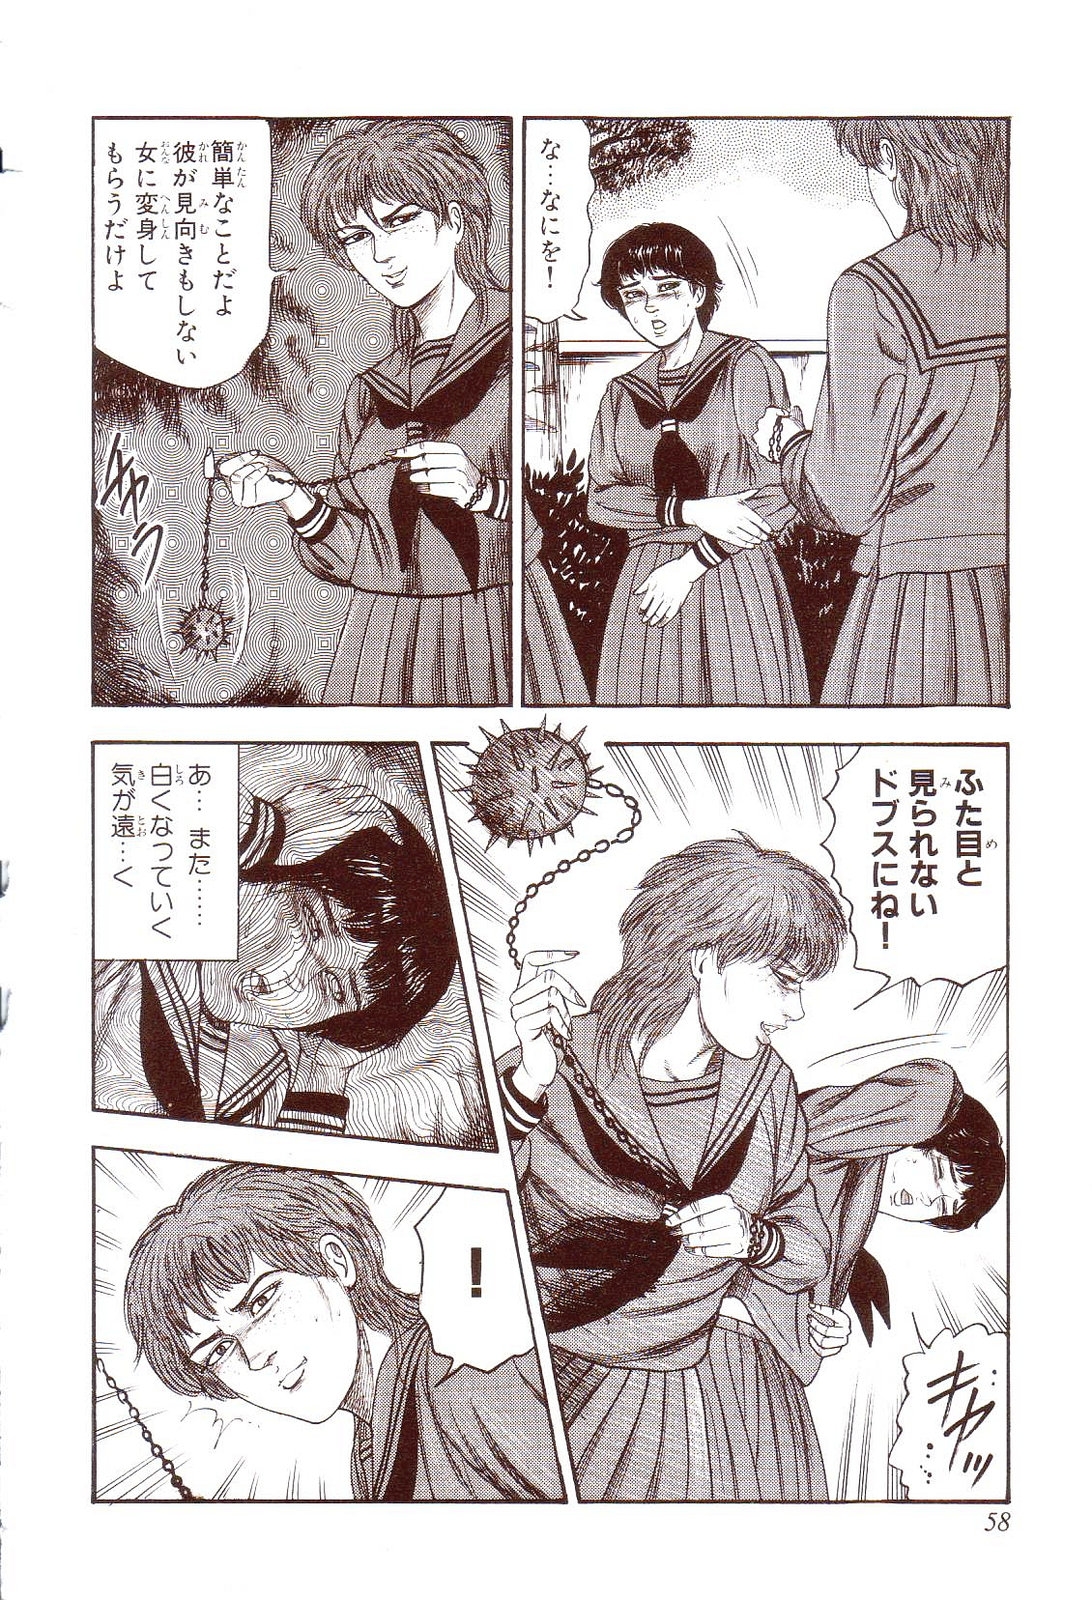 [Sanjou Tomomi] Inu ni Naritai -kyoufu manga shugyoku sakuhinshiyuu- 62